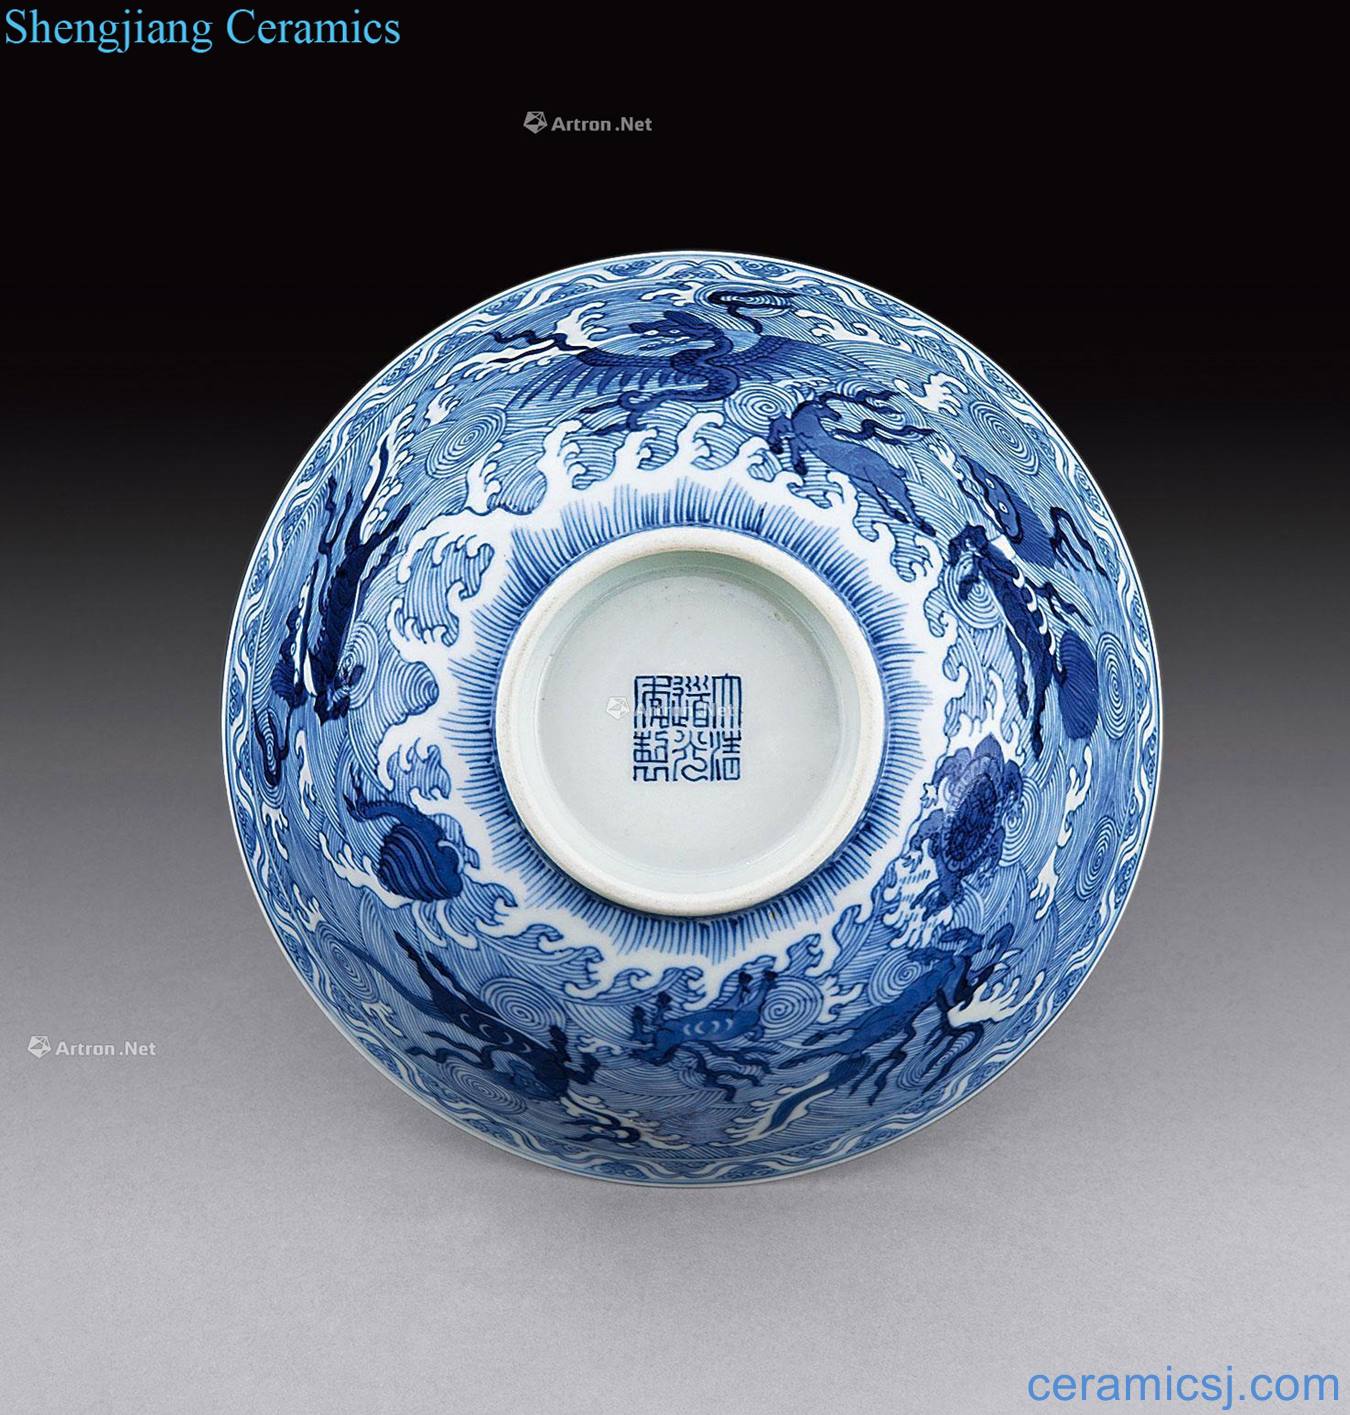 Qing daoguang Blue sea benevolent green-splashed bowls